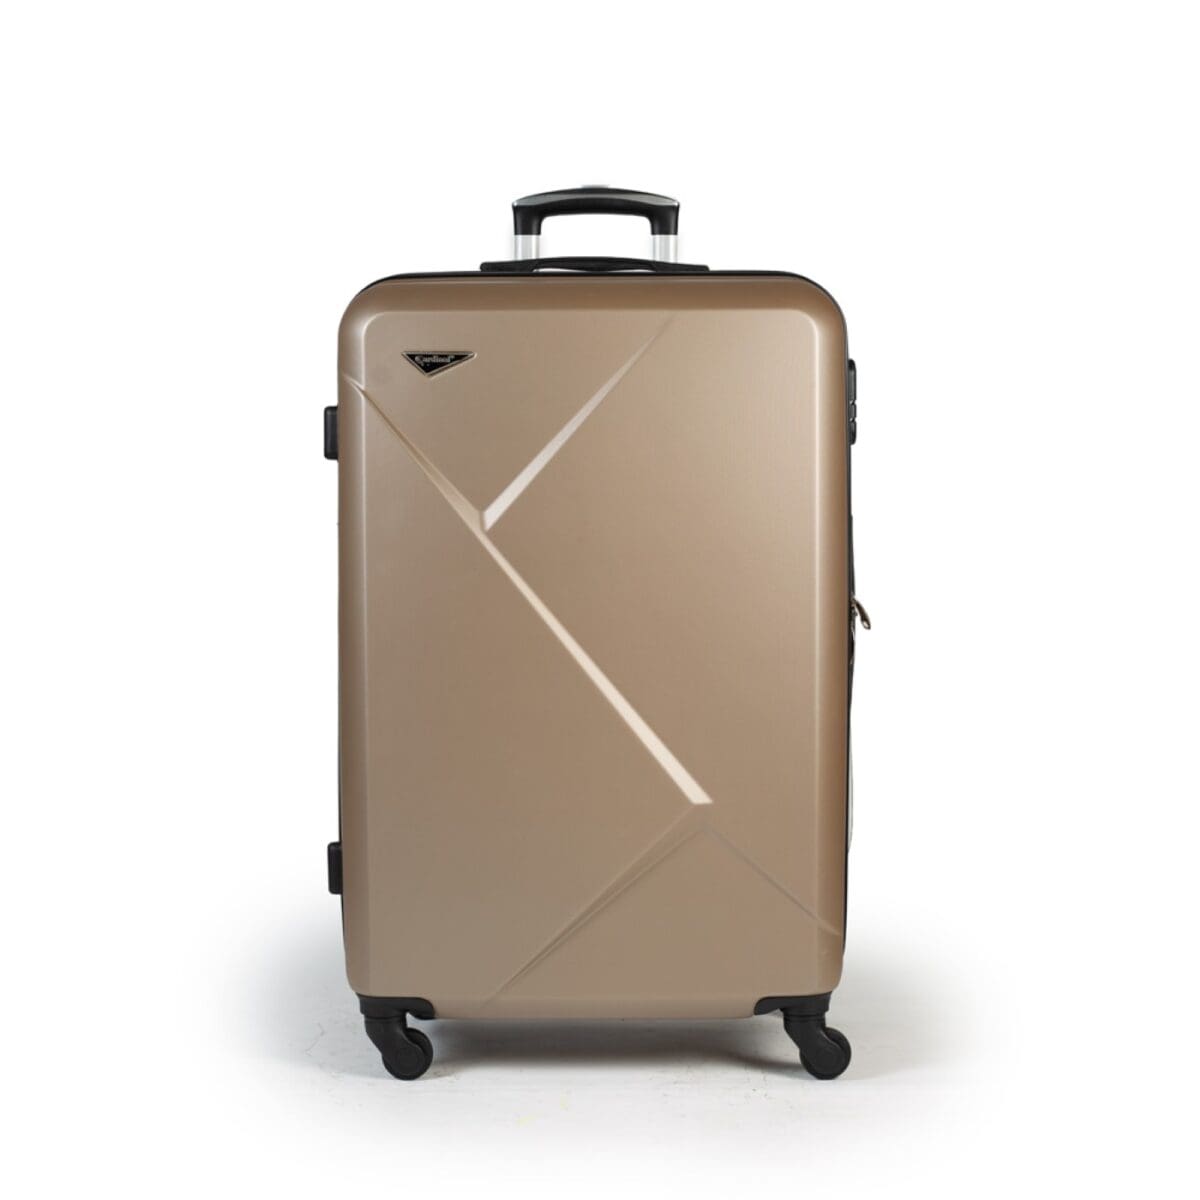 Βαλίτσα μεσαία με κλειδαριά , υλικό abs σε χρώμα σαμπανί .